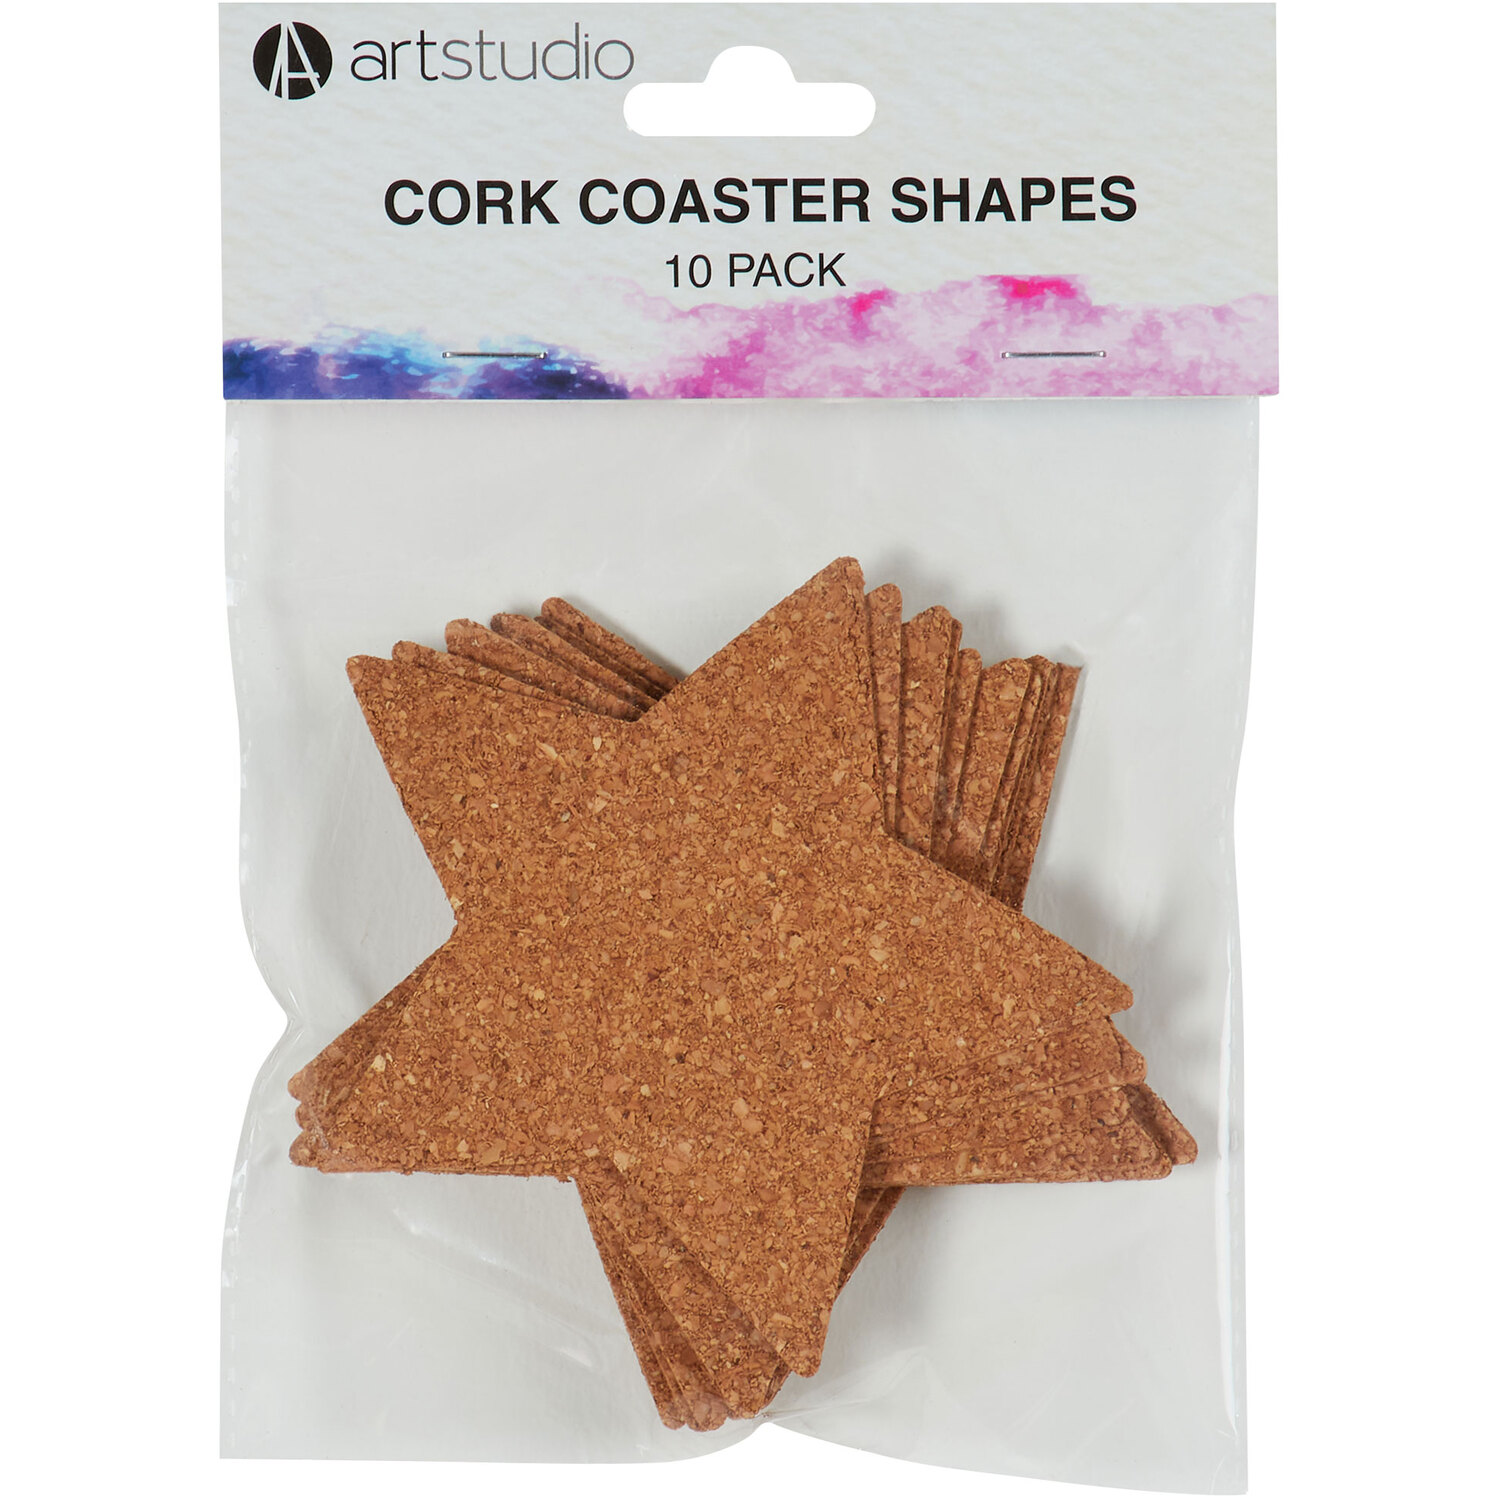 Cork Coaster Shapes Image 7